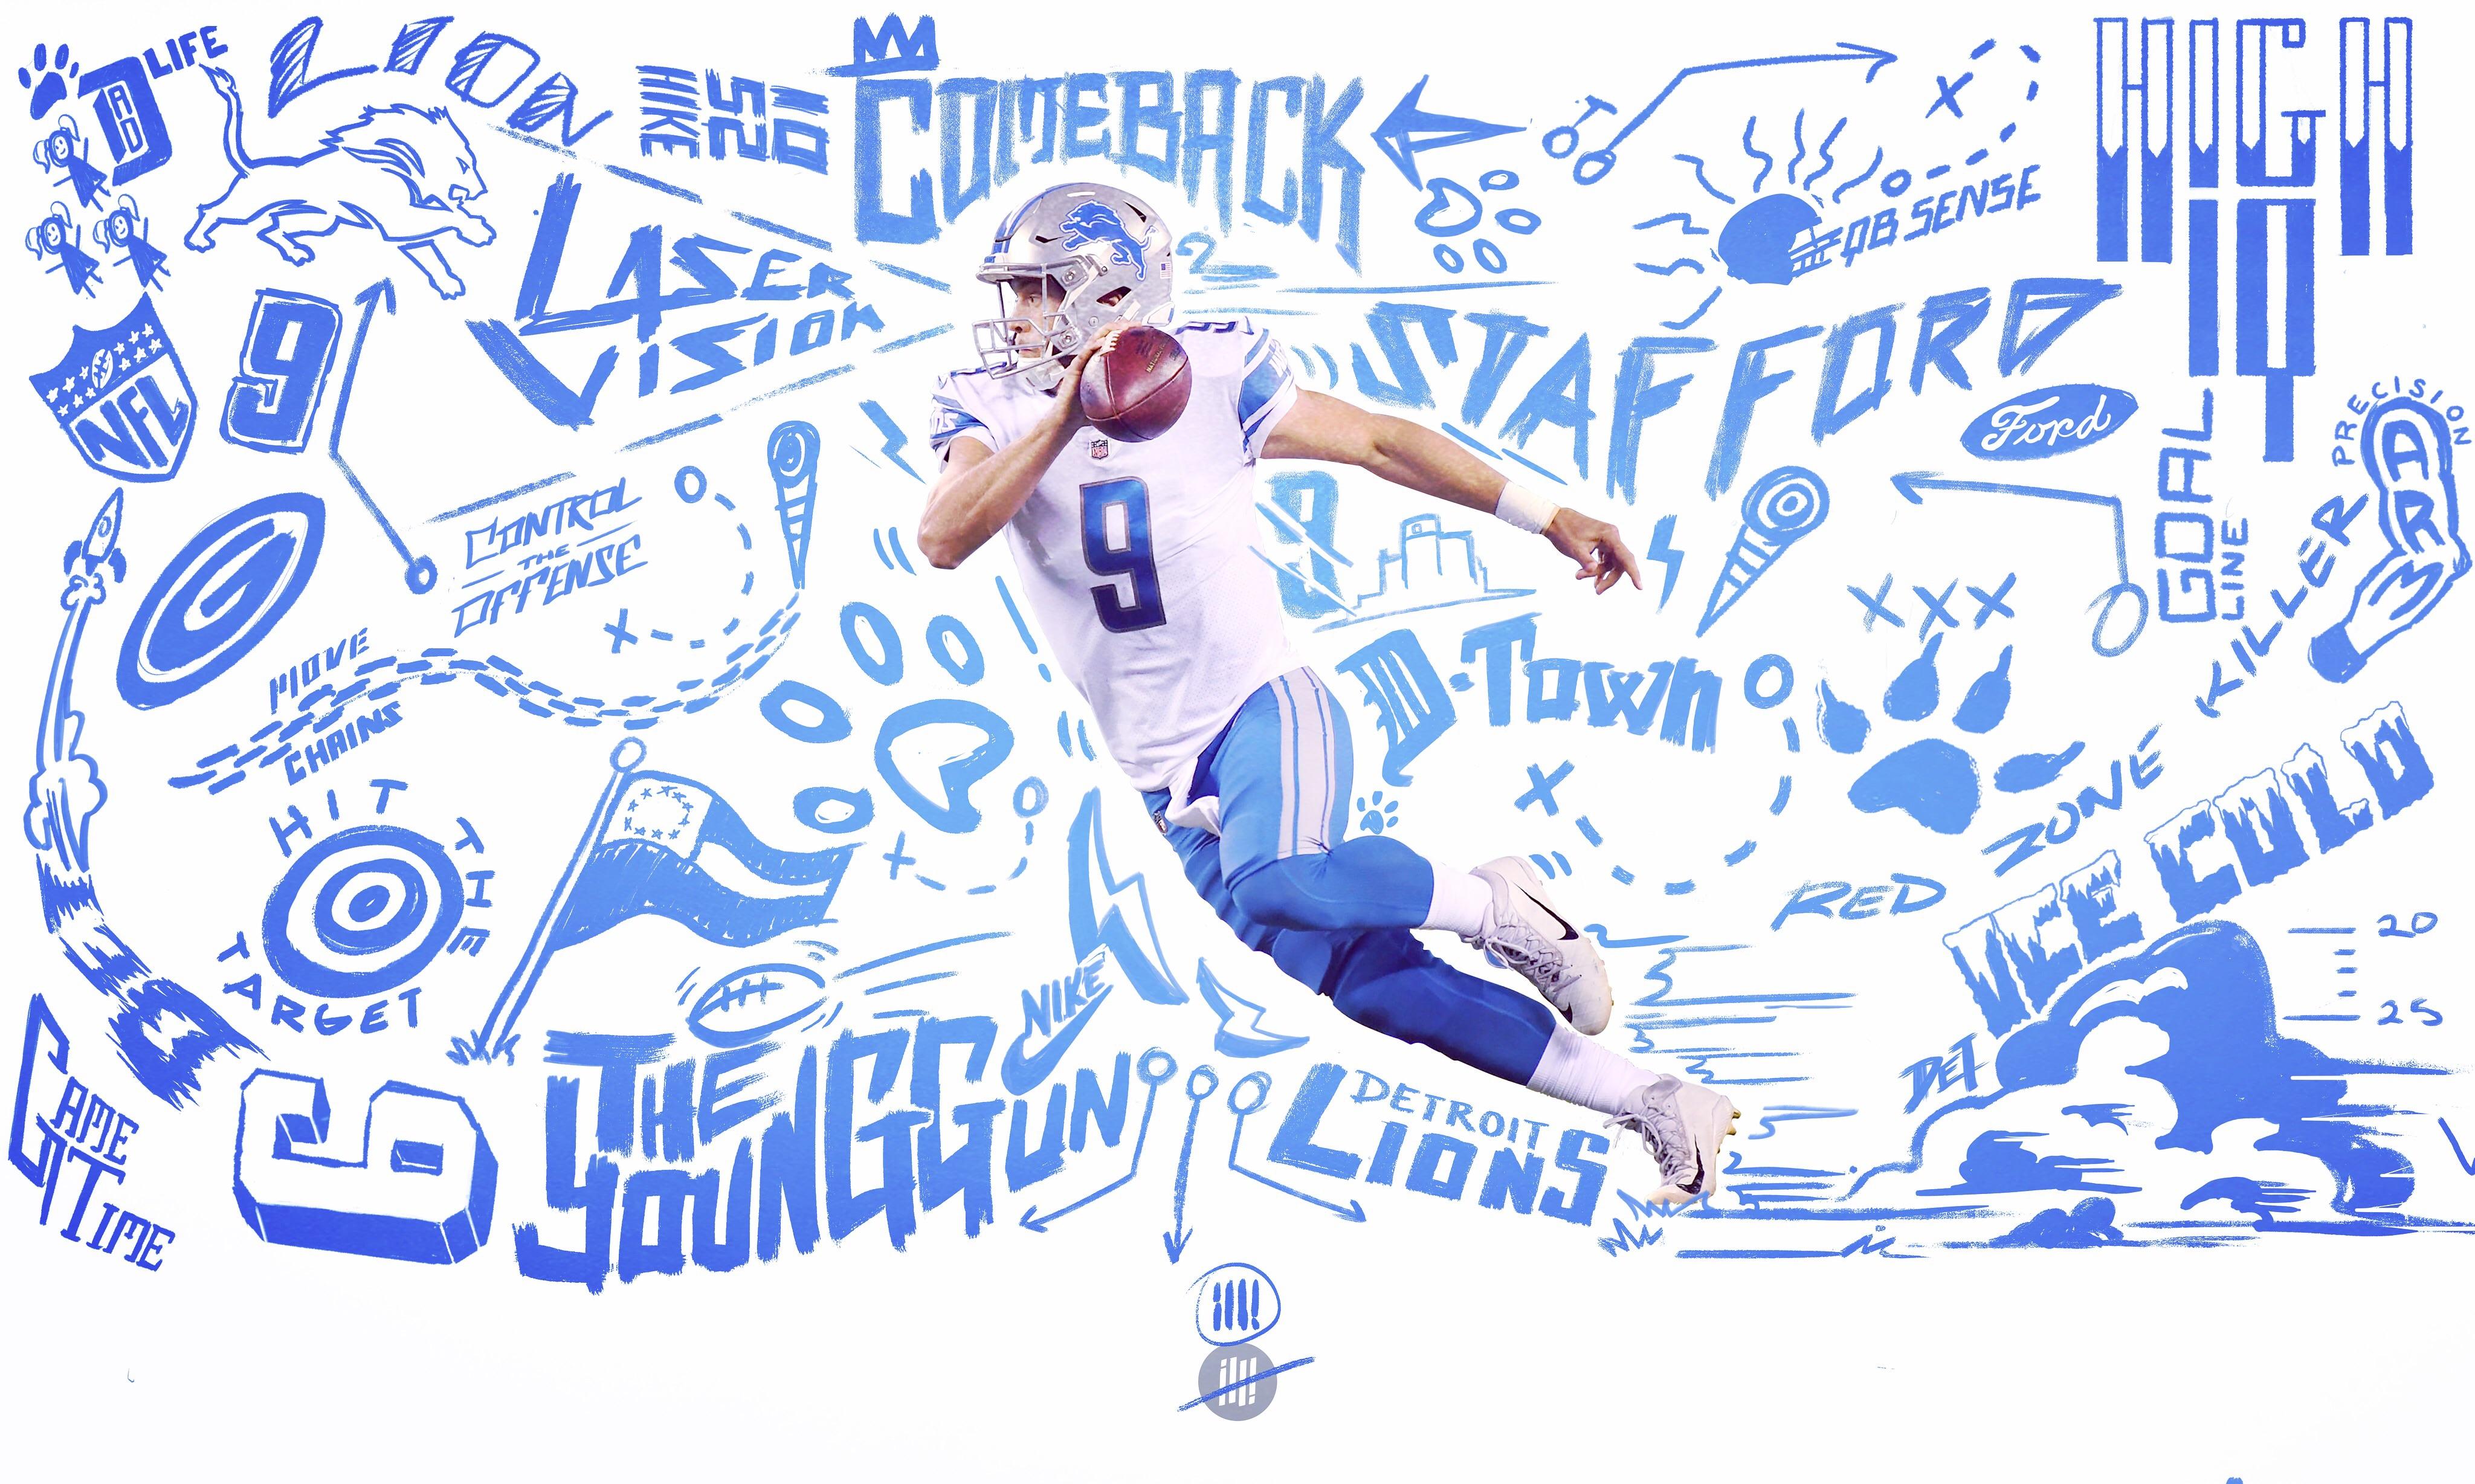 Desktop Background illustration I made of Stafford